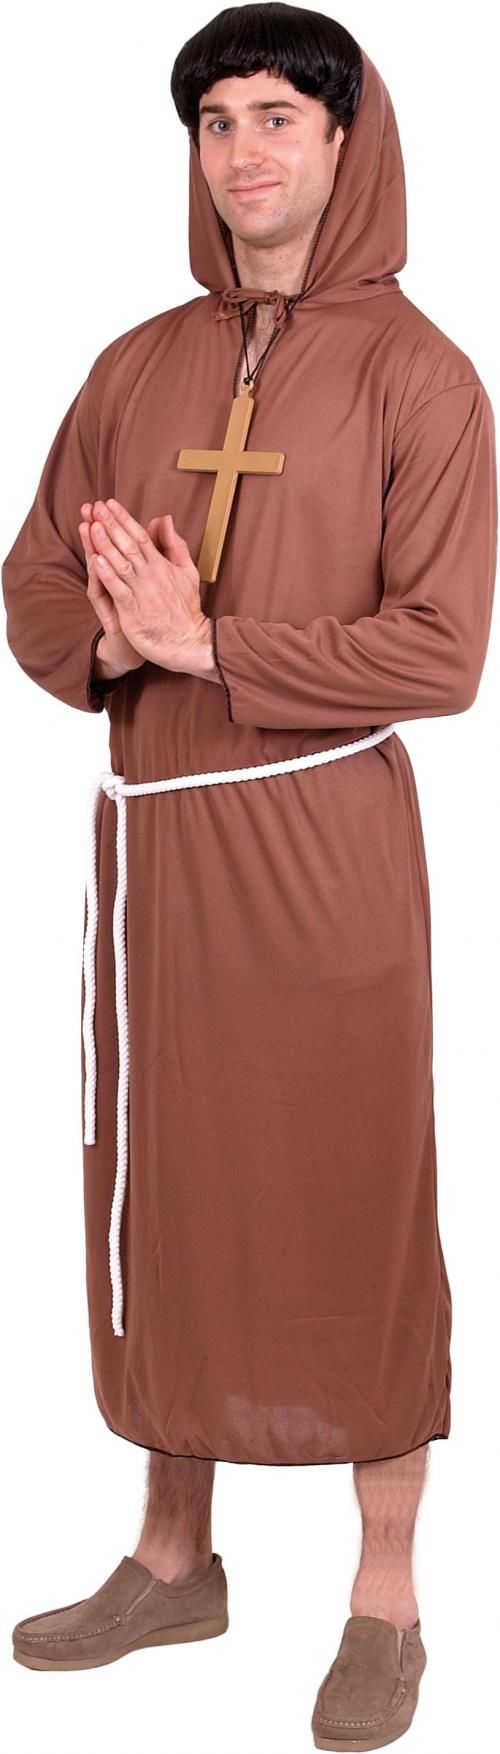 Pánský kostým mnich - Velikost L 52-54